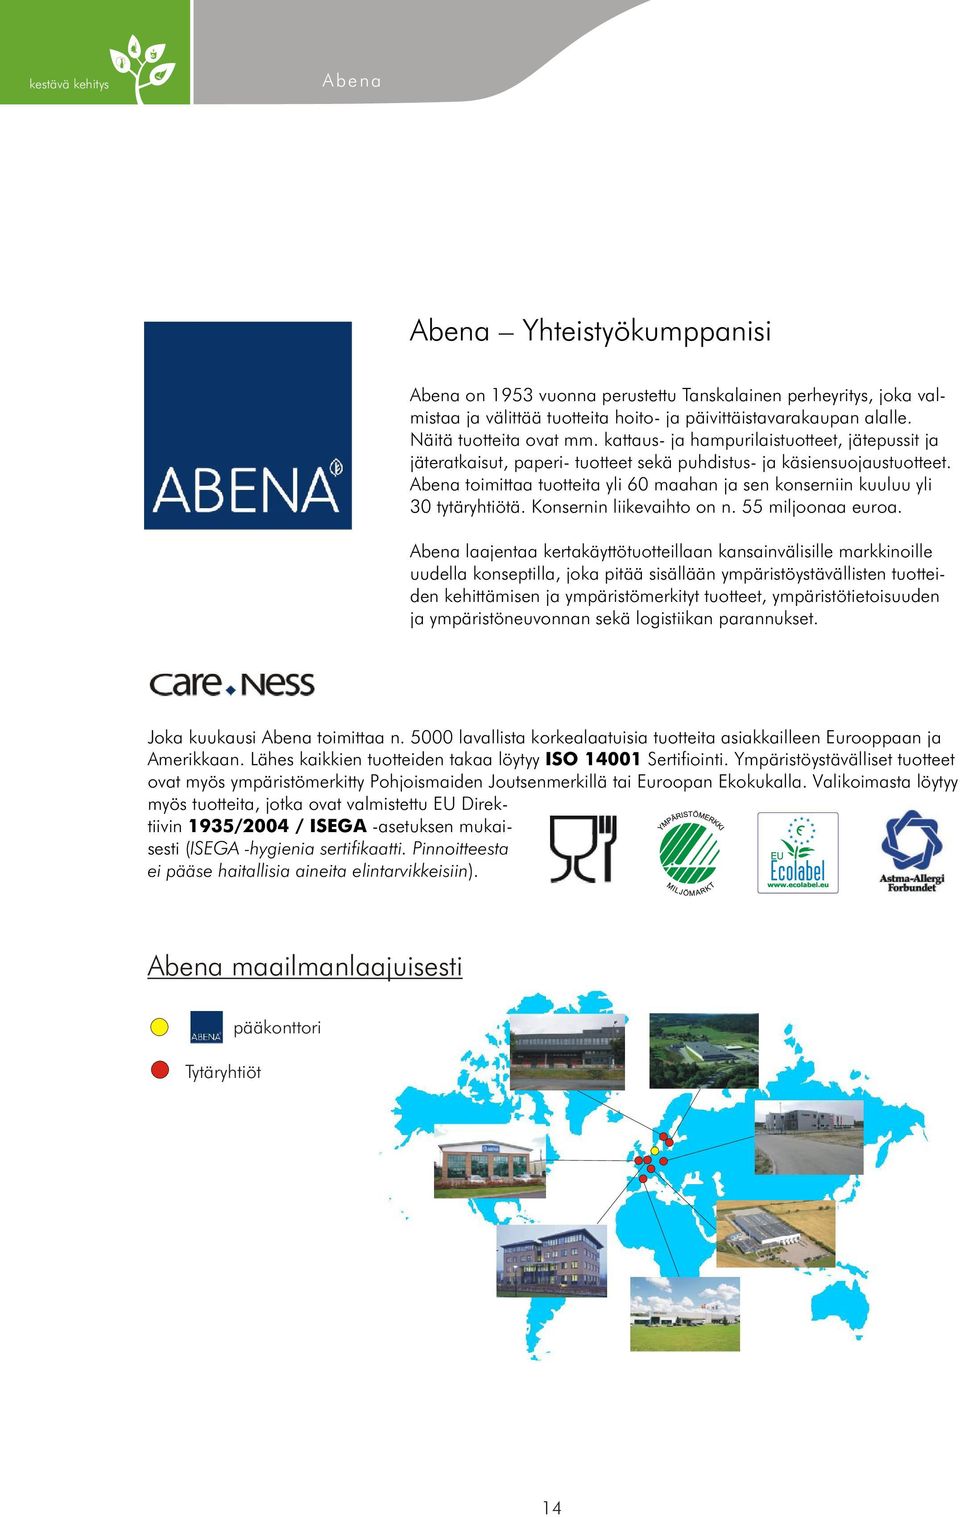 Abena toimittaa tuotteita yli 60 maahan ja sen konserniin kuuluu yli 30 tytäryhtiötä. Konsernin liikevaihto on n. 55 miljoonaa euroa.